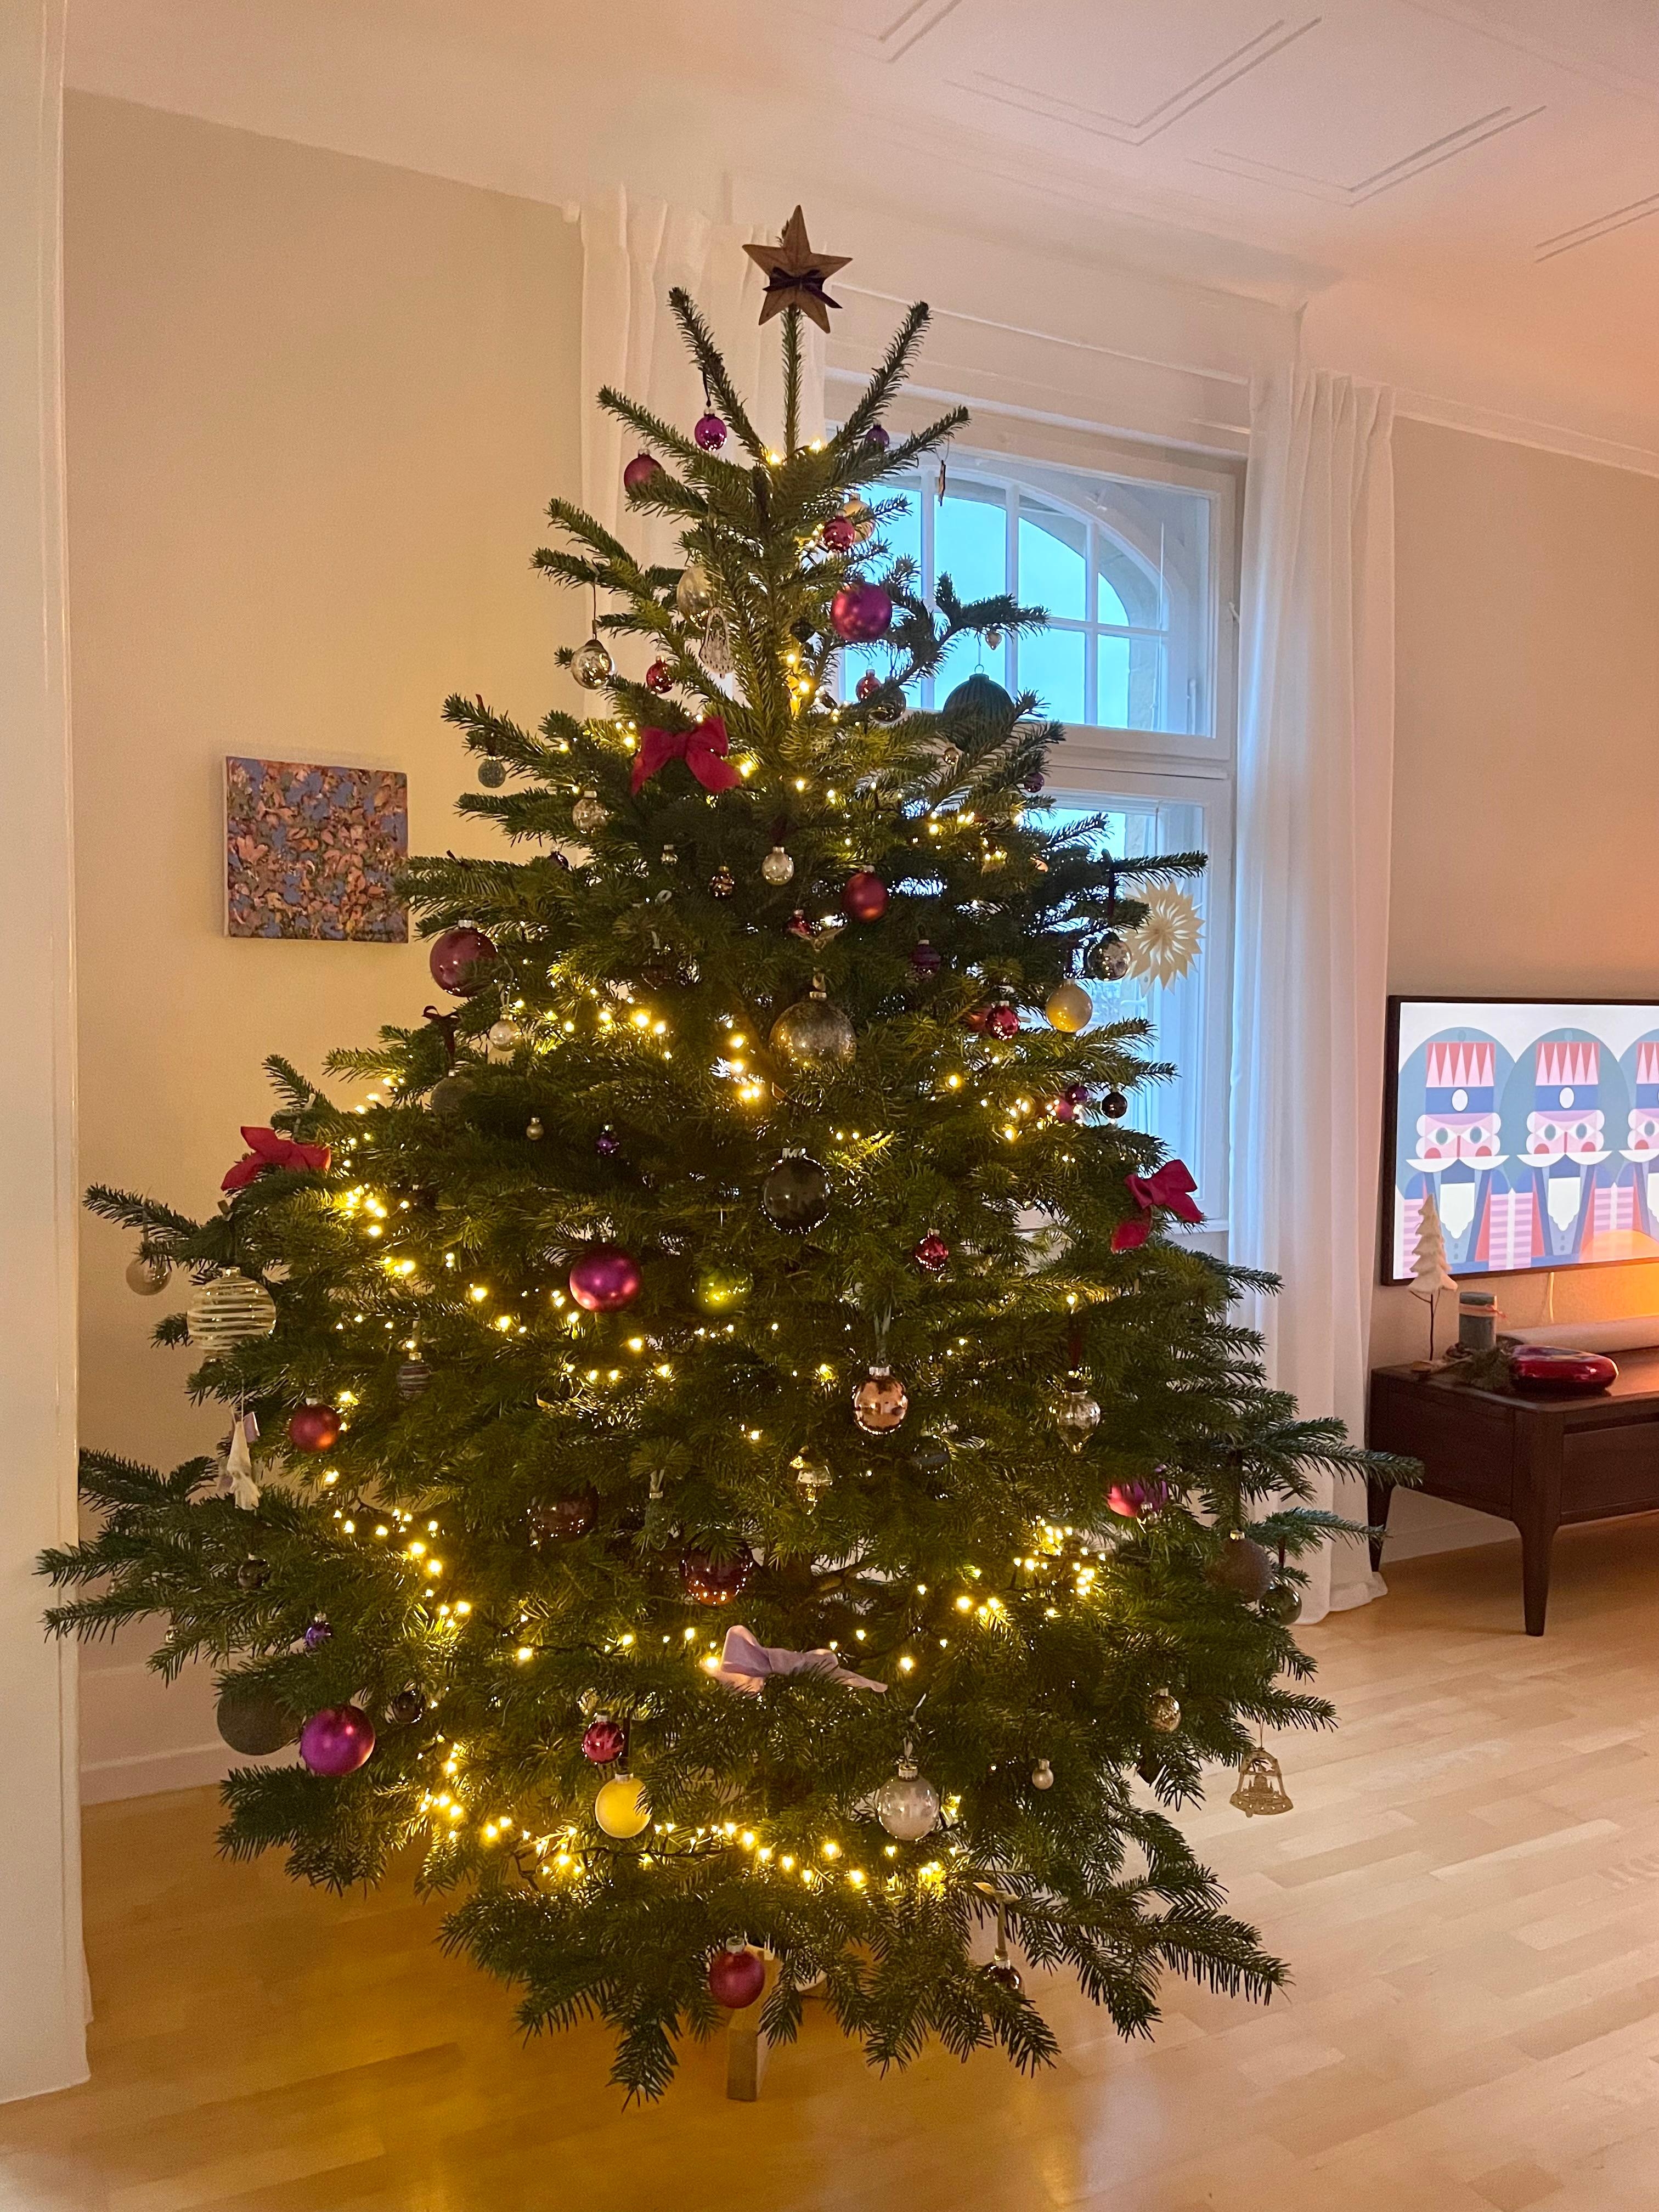 #weihnachtsbaum #christbaum #tannenbaum #froheweihnachten #altbau #altbauliebe